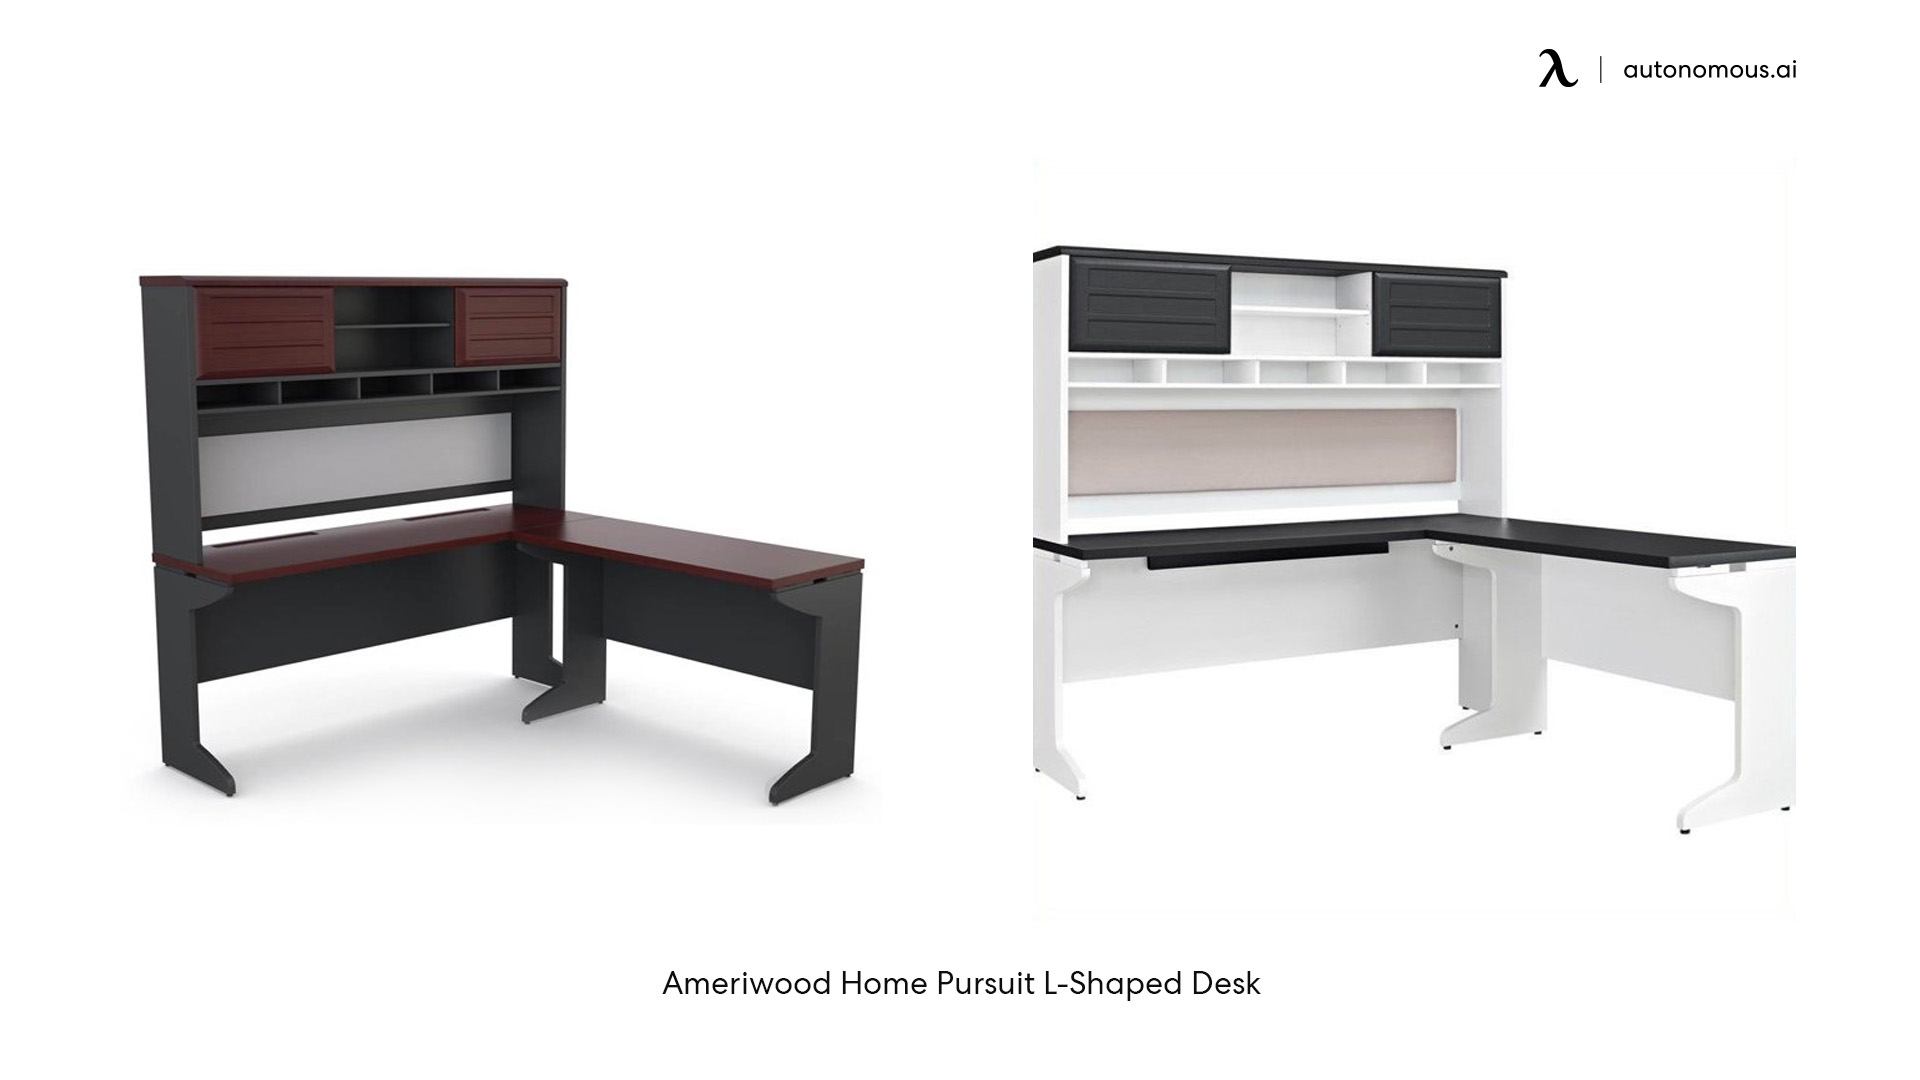 Ameriwood Home Pursuit L-Shaped Desk